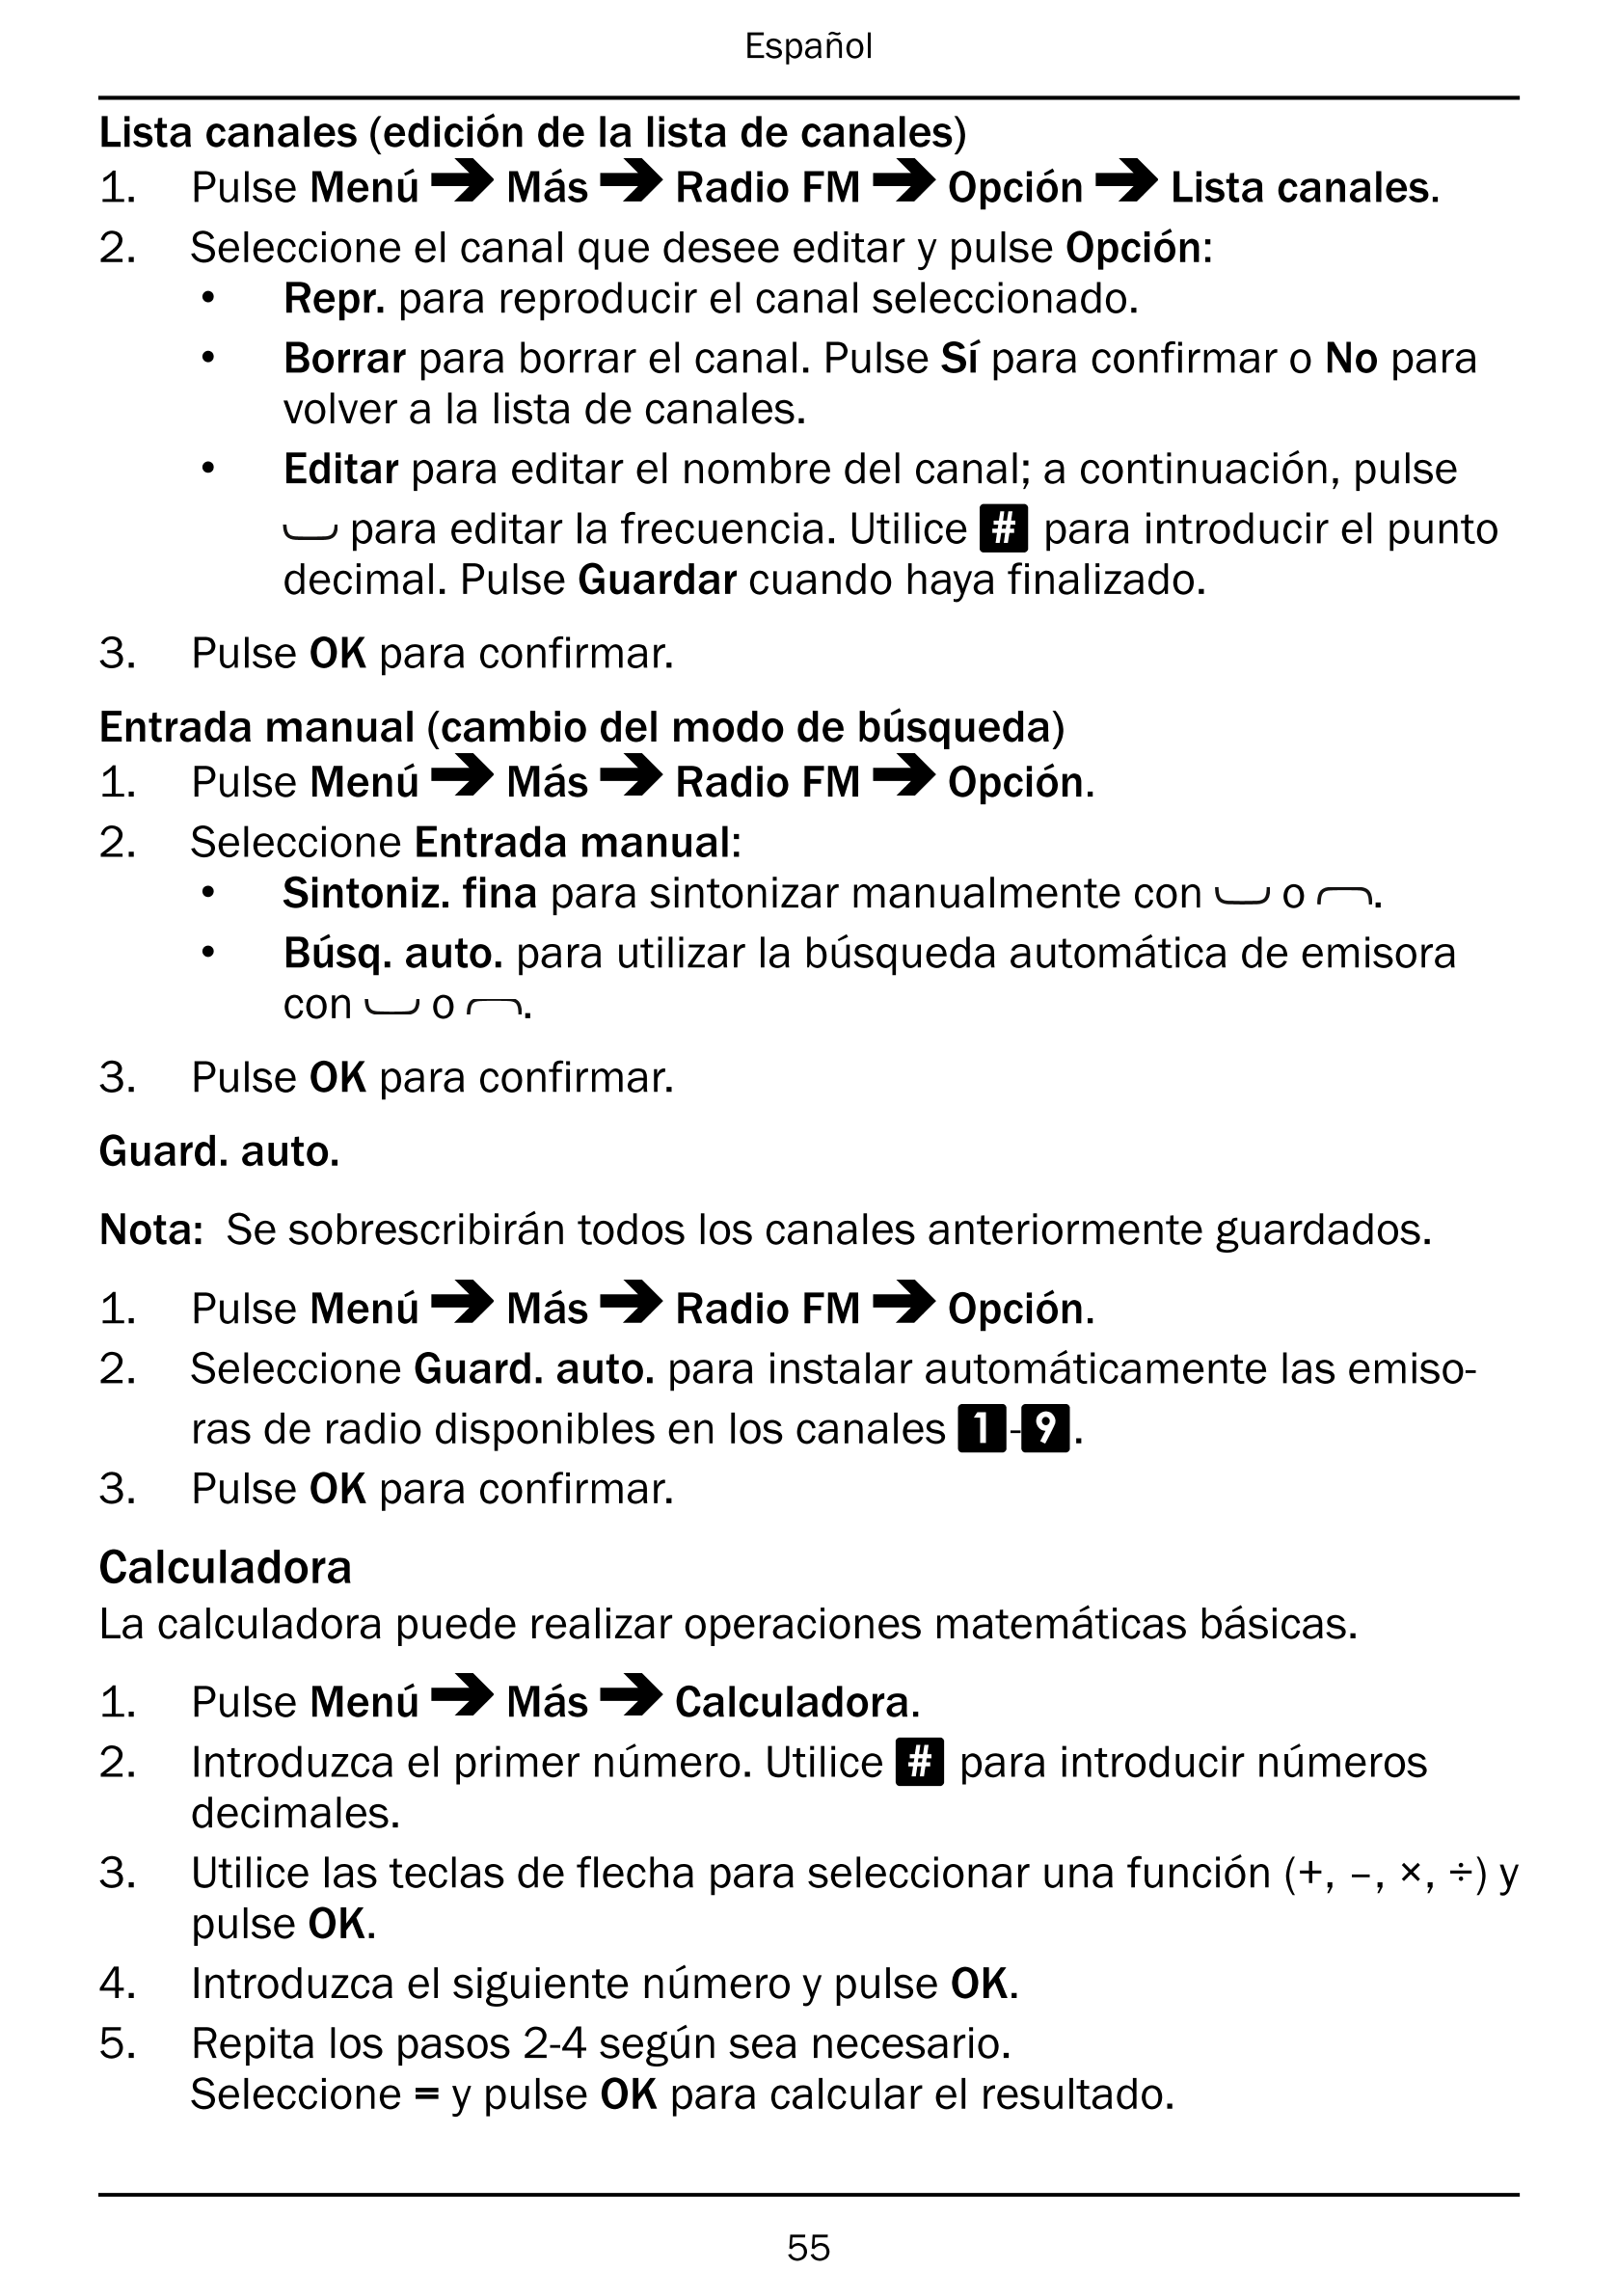 Español
Lista canales (edición de la lista de canales)
1.     Pulse Menú Más Radio FM Opción Lista canales.
2.     Seleccione el